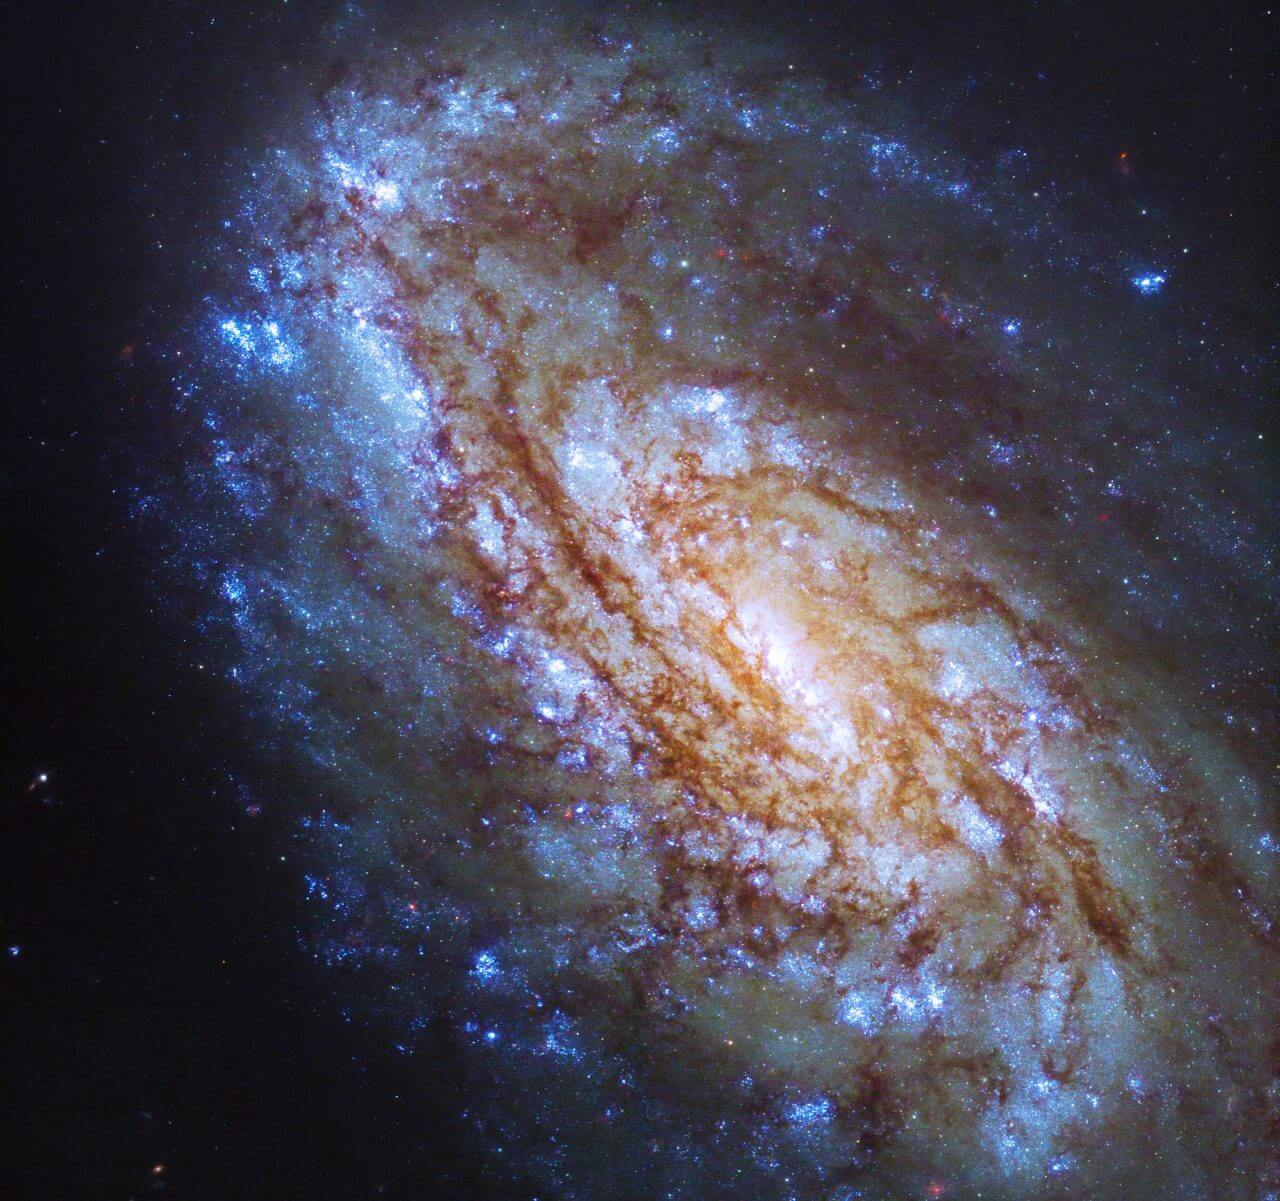 周囲からの影響を受けた“おとめ座銀河団”の渦巻銀河 ハッブル宇宙望遠鏡で撮影